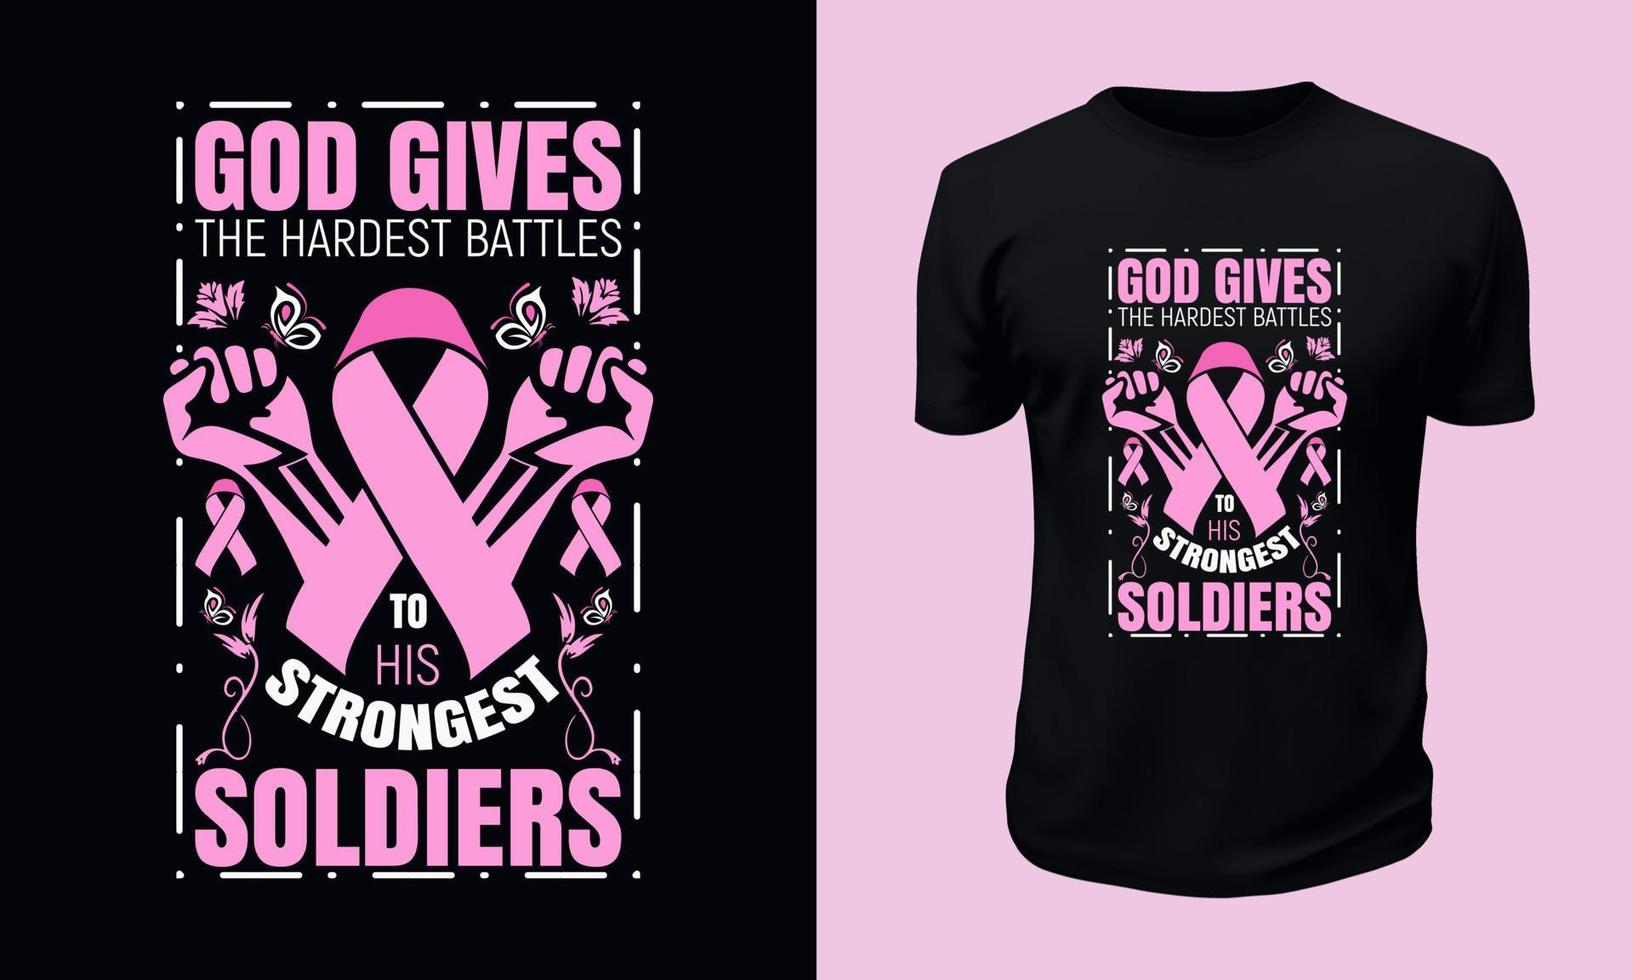 diseño de camiseta de concientización sobre el cáncer de mama vector